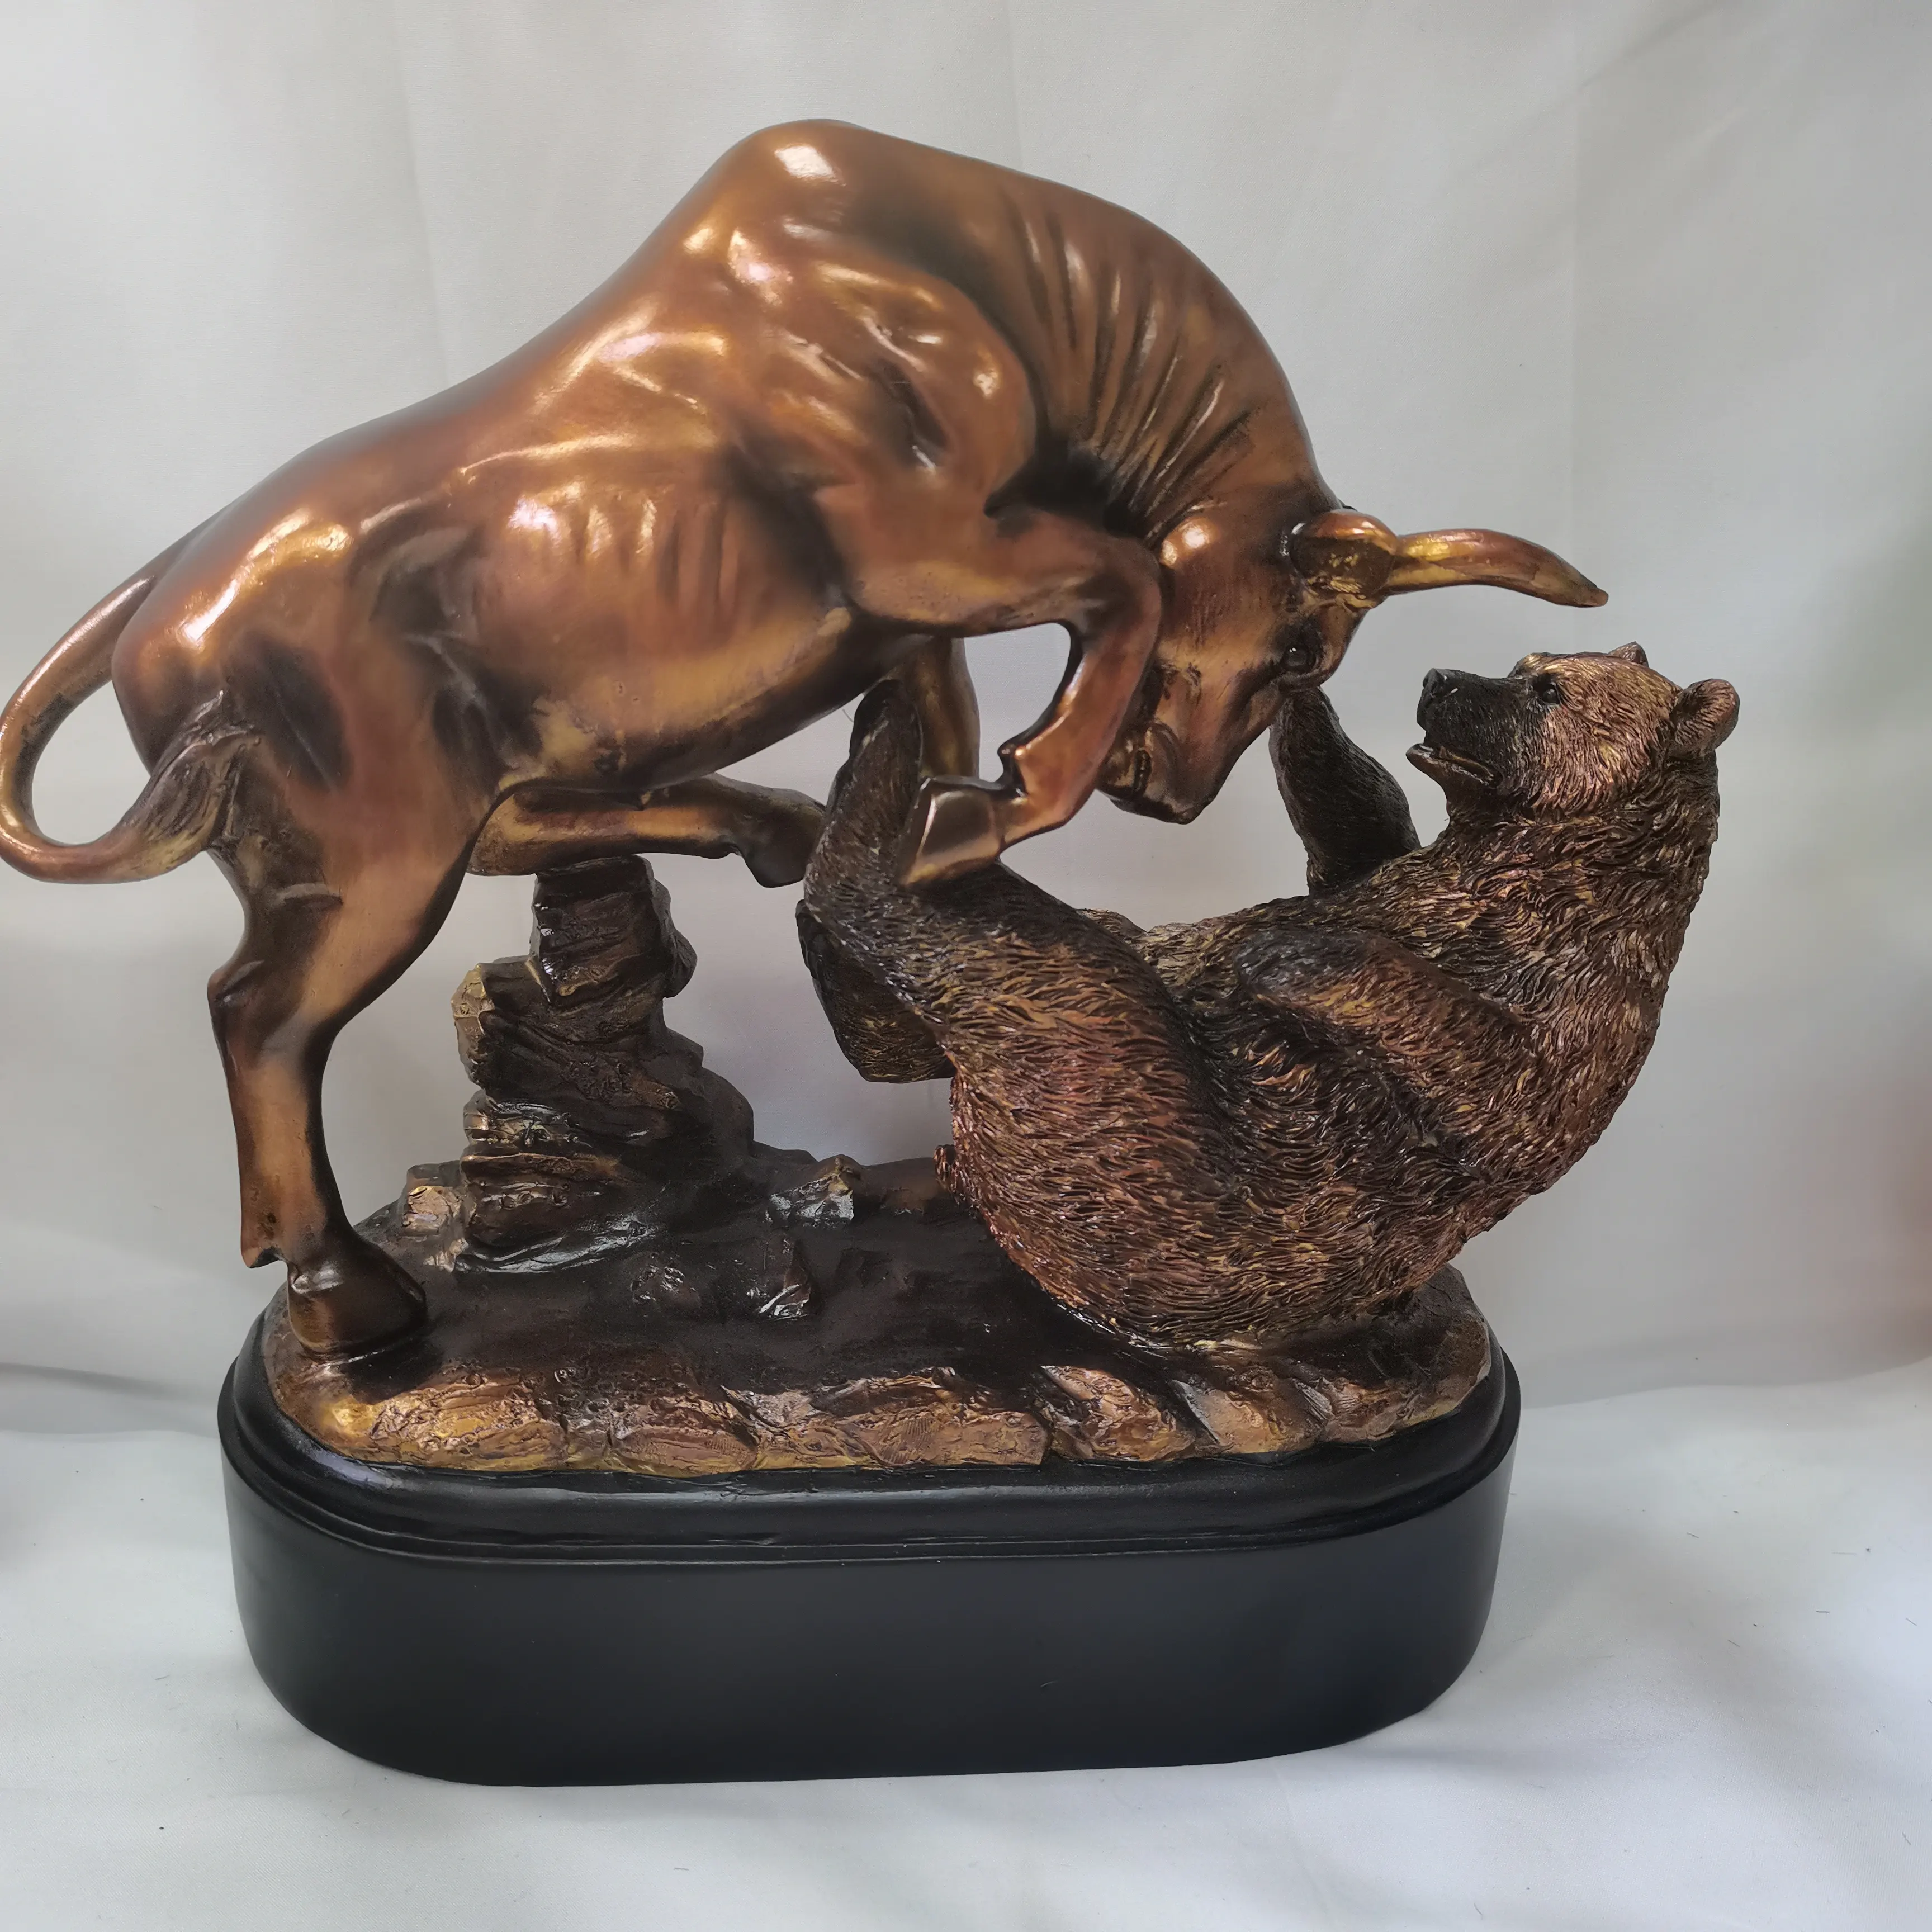 Escultura de resina artesanal, estatua de escultura de toro y oso de resina electrochapada de bronce, 10 "W X 9,5" H